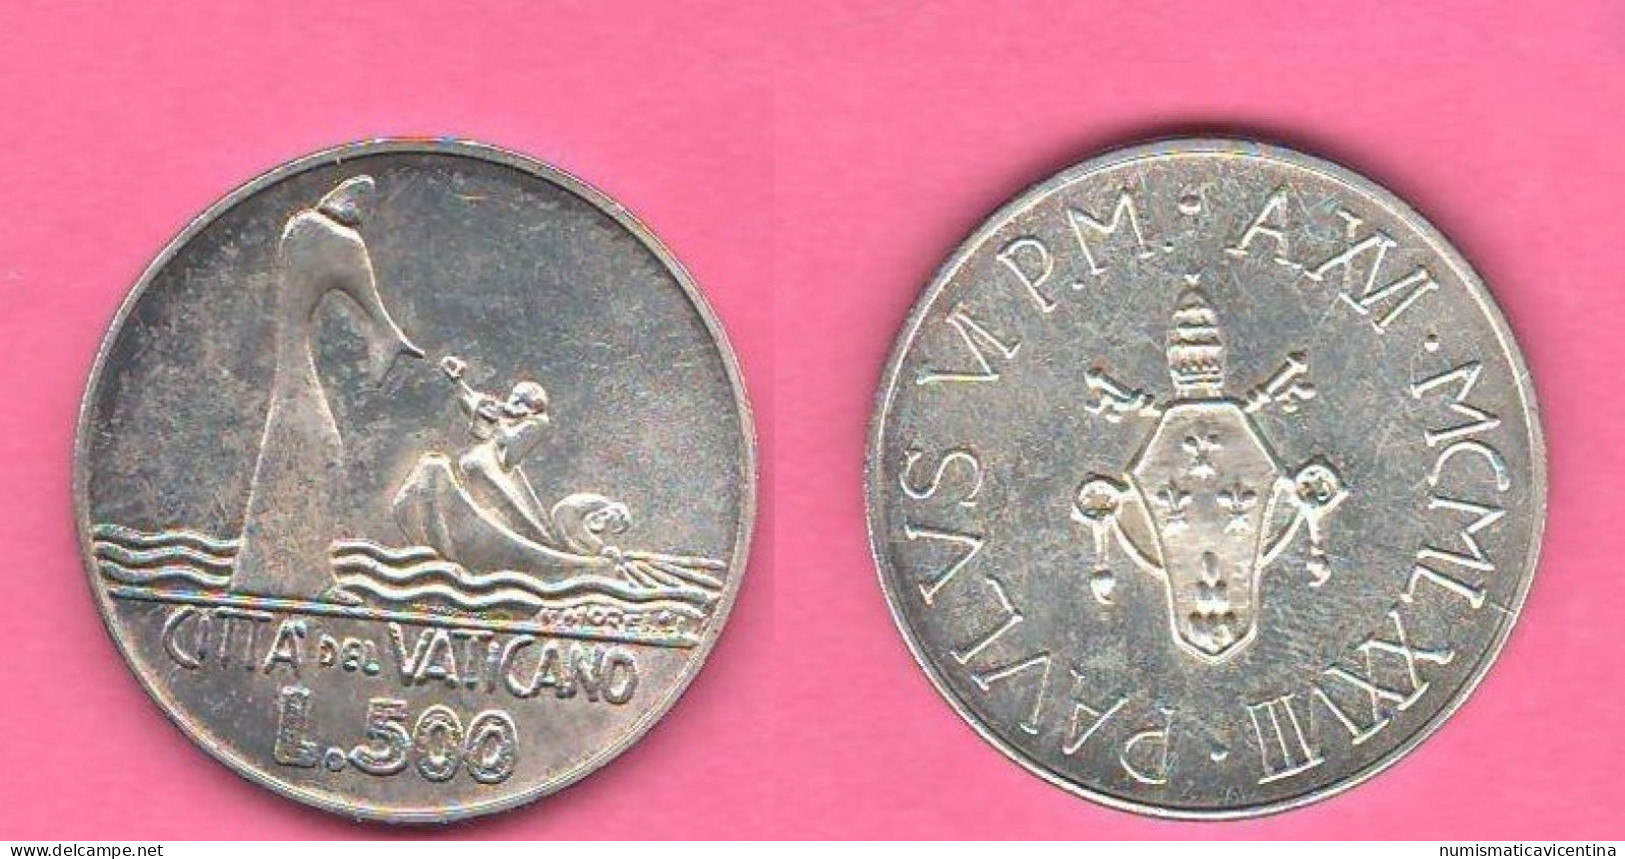 Vaticano 500 Lire 1978 Paolo VI° Anno XVI° Vatican City Silver Coin - Vatikan